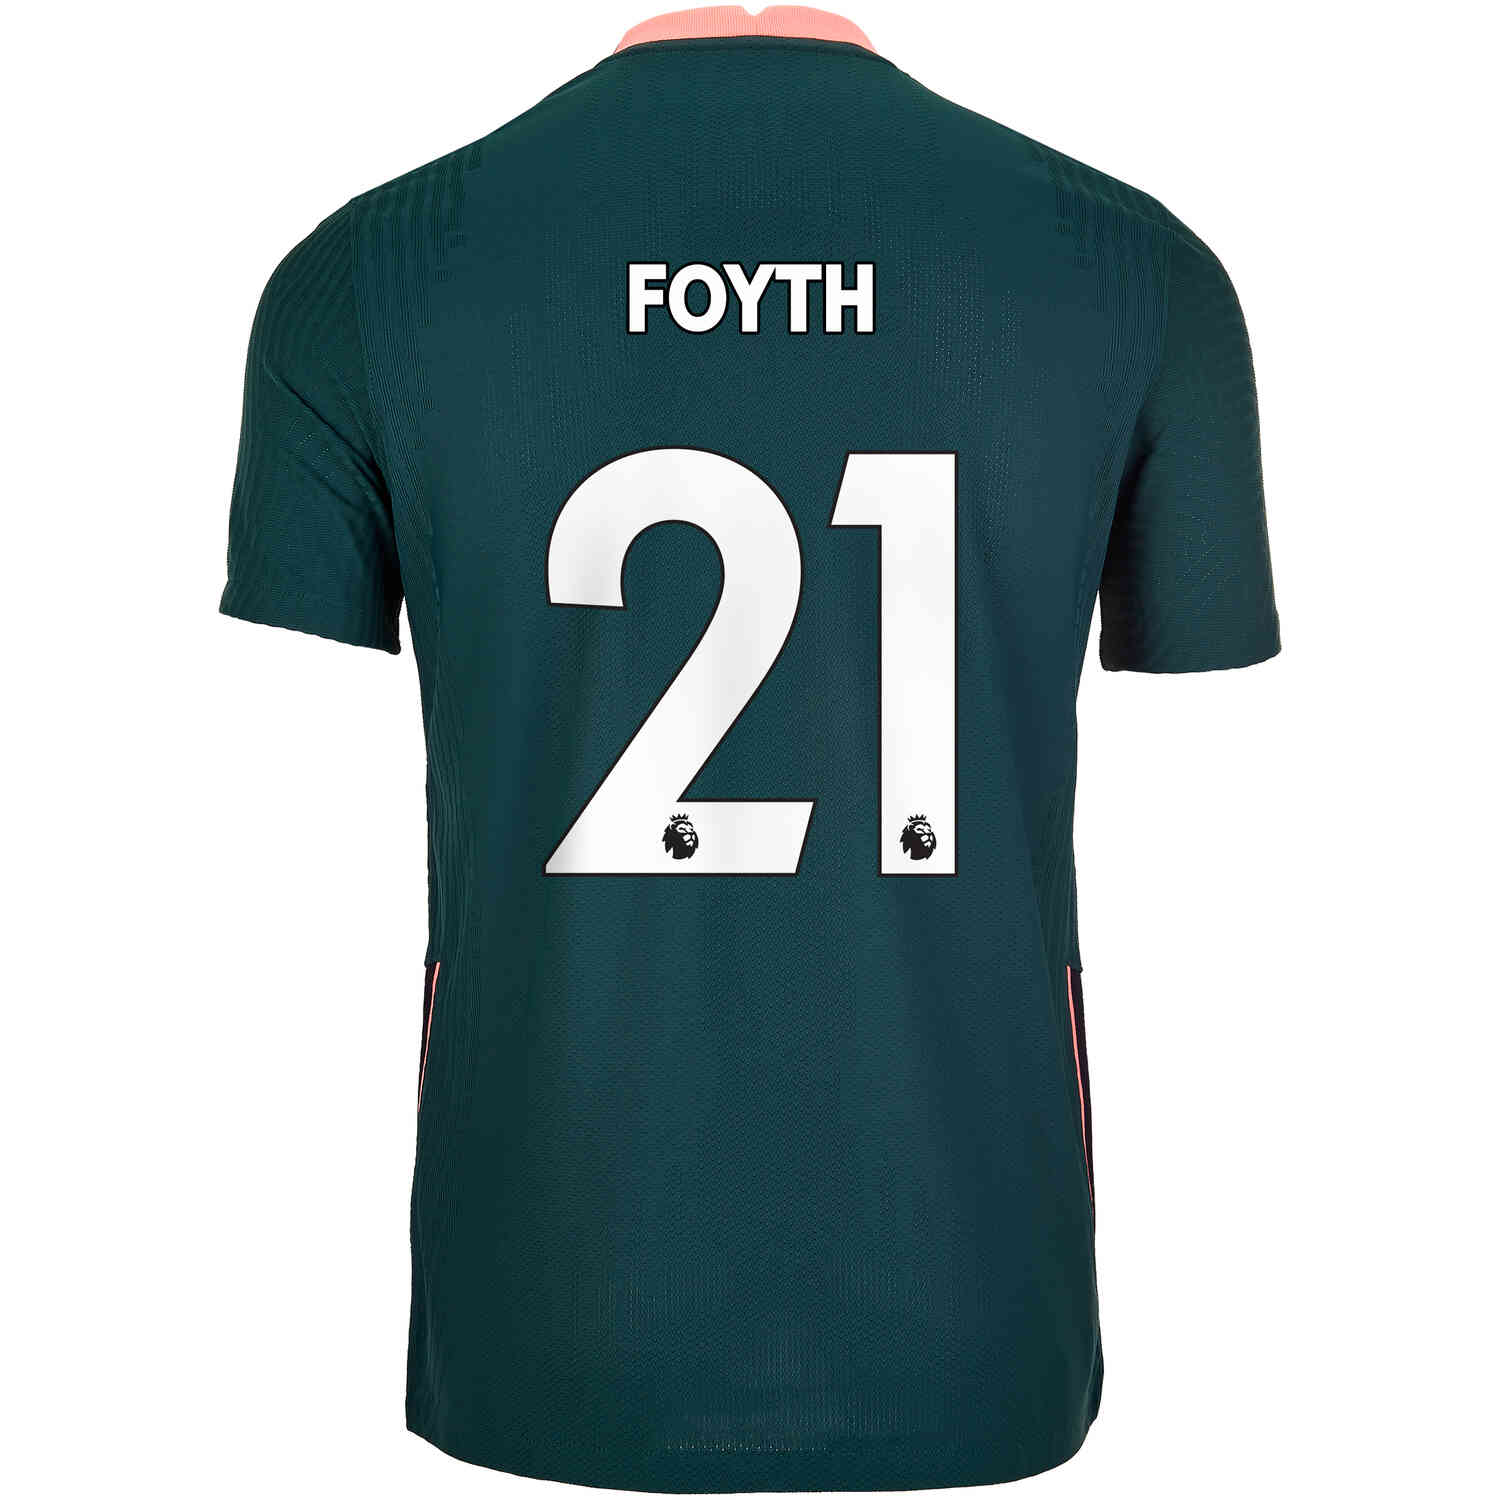 2020/21 Nike Juan Foyth Tottenham Away Match Jersey - SoccerPro